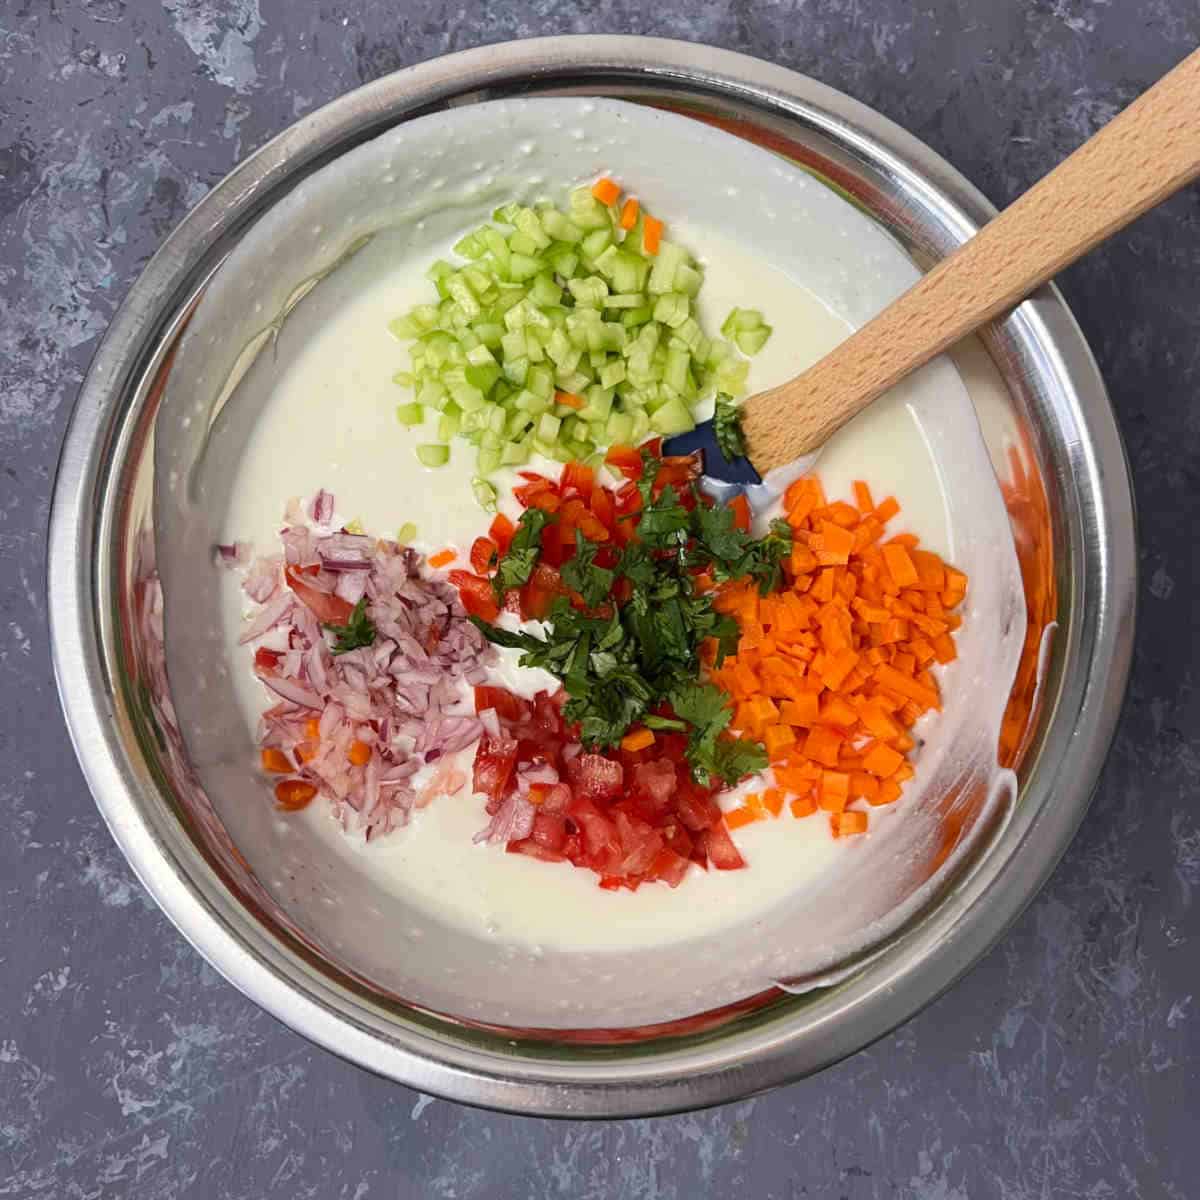 Add veggies and seasoning to yogurt.